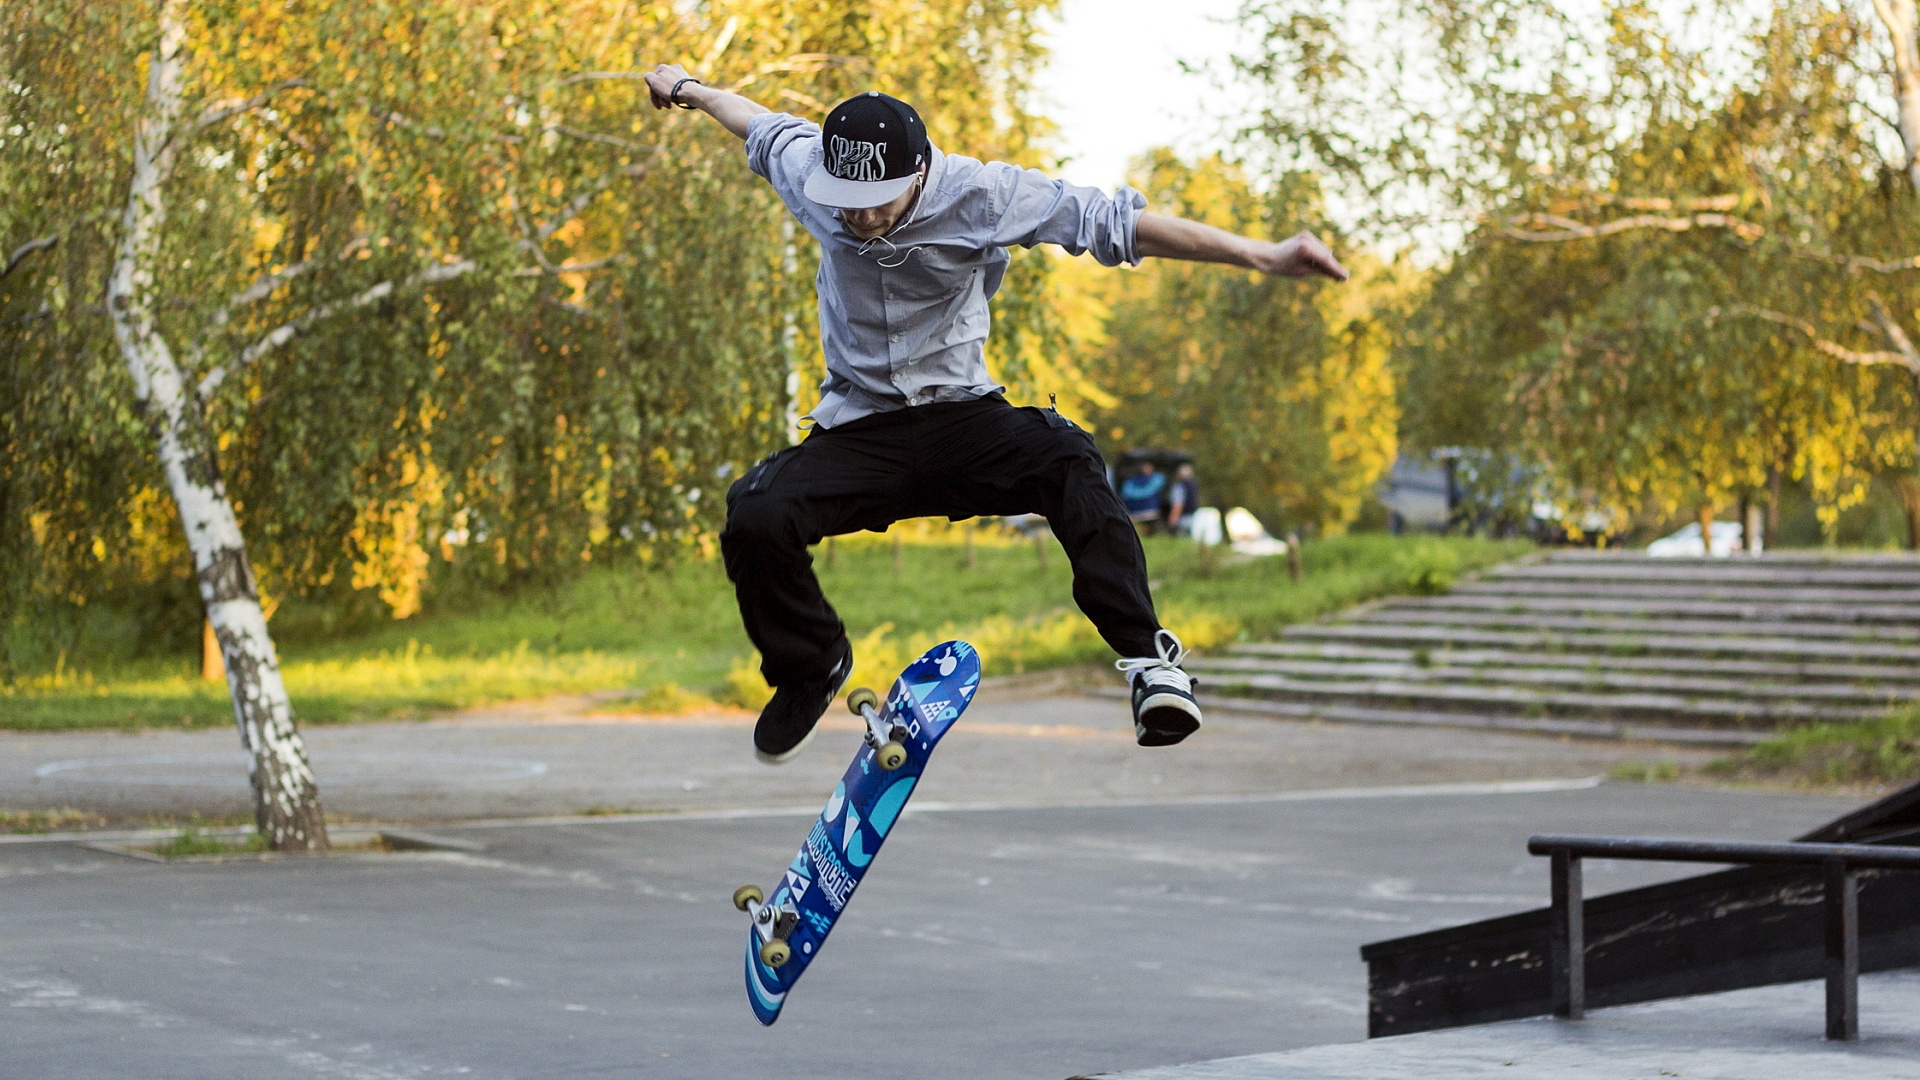 cool skateboard wallpapers,skateboarding,skateboarder,skateboard,boardsport,kickflip